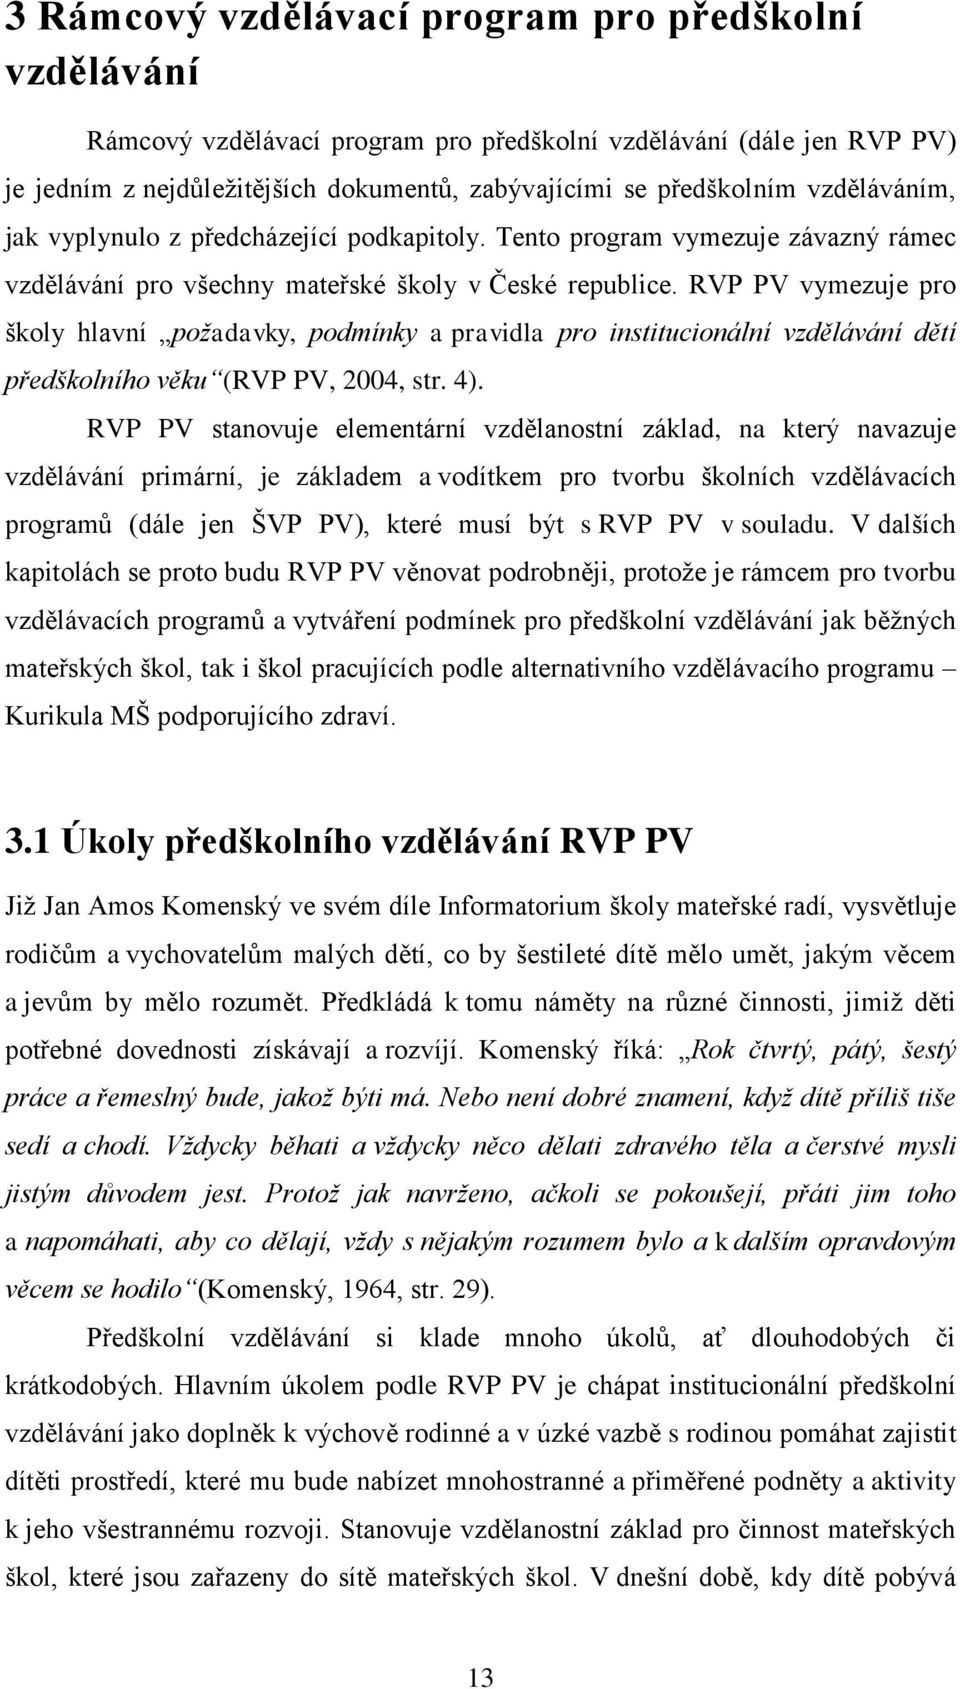 RVP PV vymezuje pro školy hlavní požadavky, podmínky a pravidla pro institucionální vzdělávání dětí předškolního věku (RVP PV, 2004, str. 4).